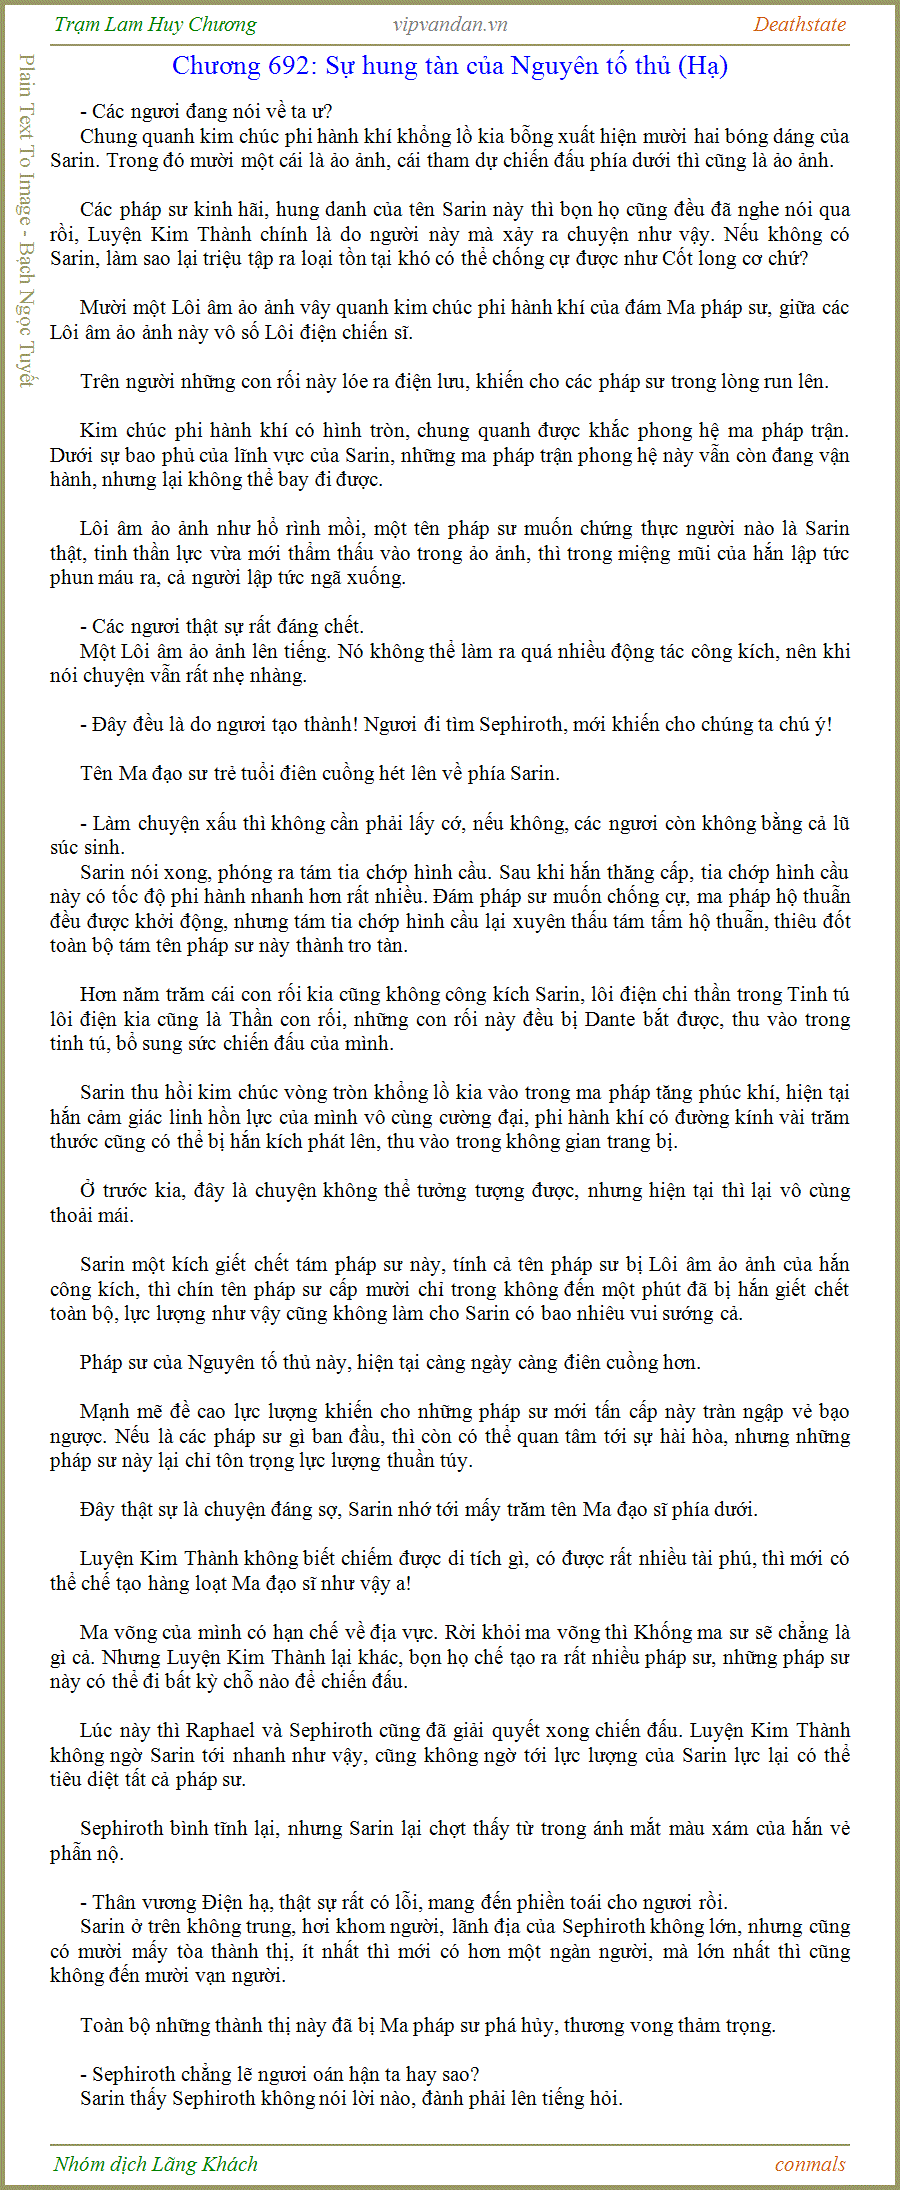 Trạm Lam Huy Chương - Deathstate - FUll - (tháo zen Quyển 3 - Chương 699)